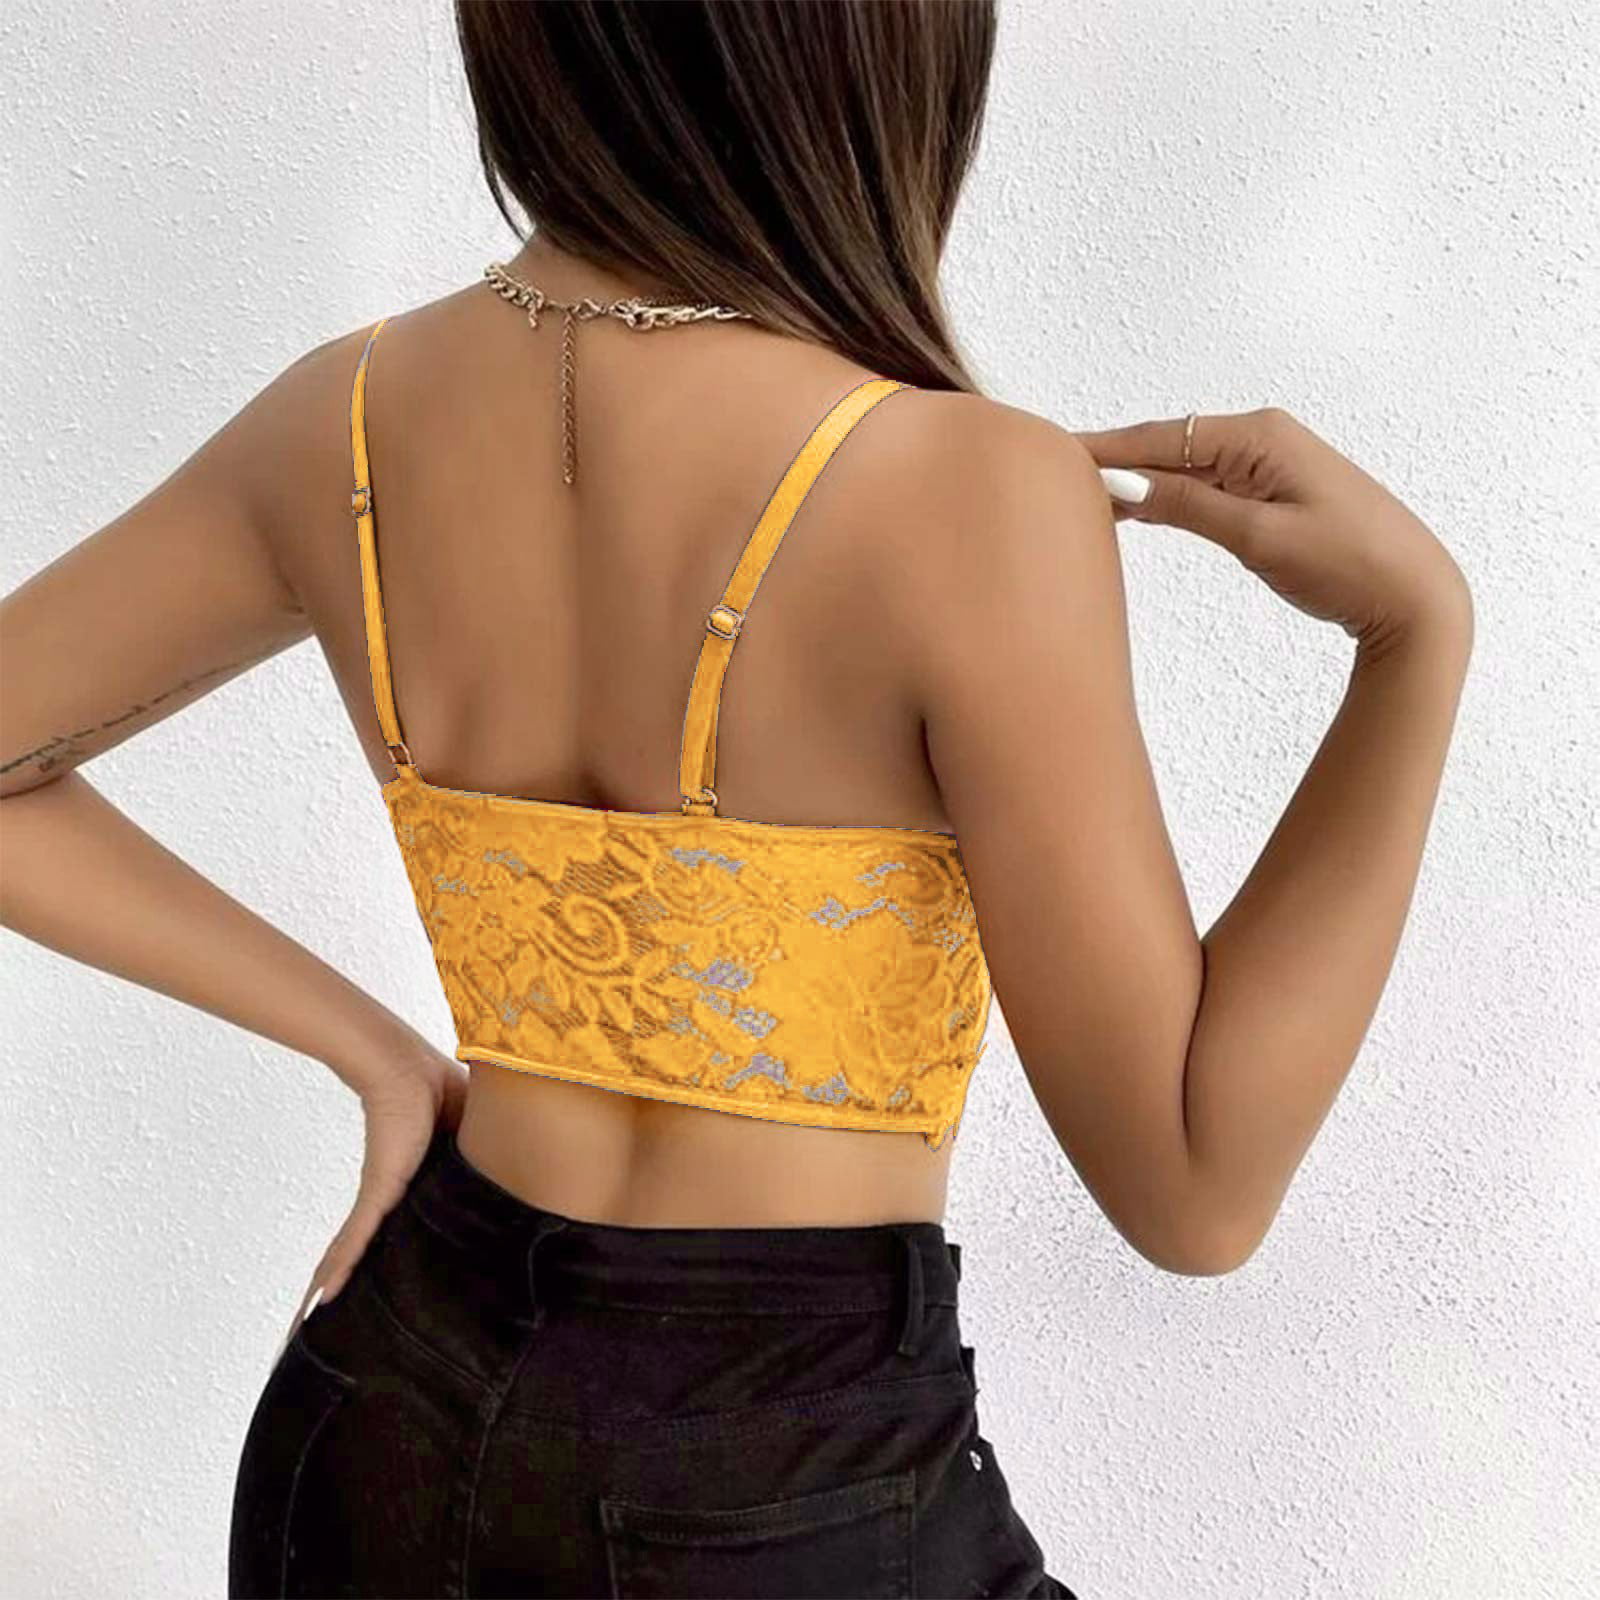 XXLvision Sexy Women Plus Size Lace Bralet Braset Vest Crop Top